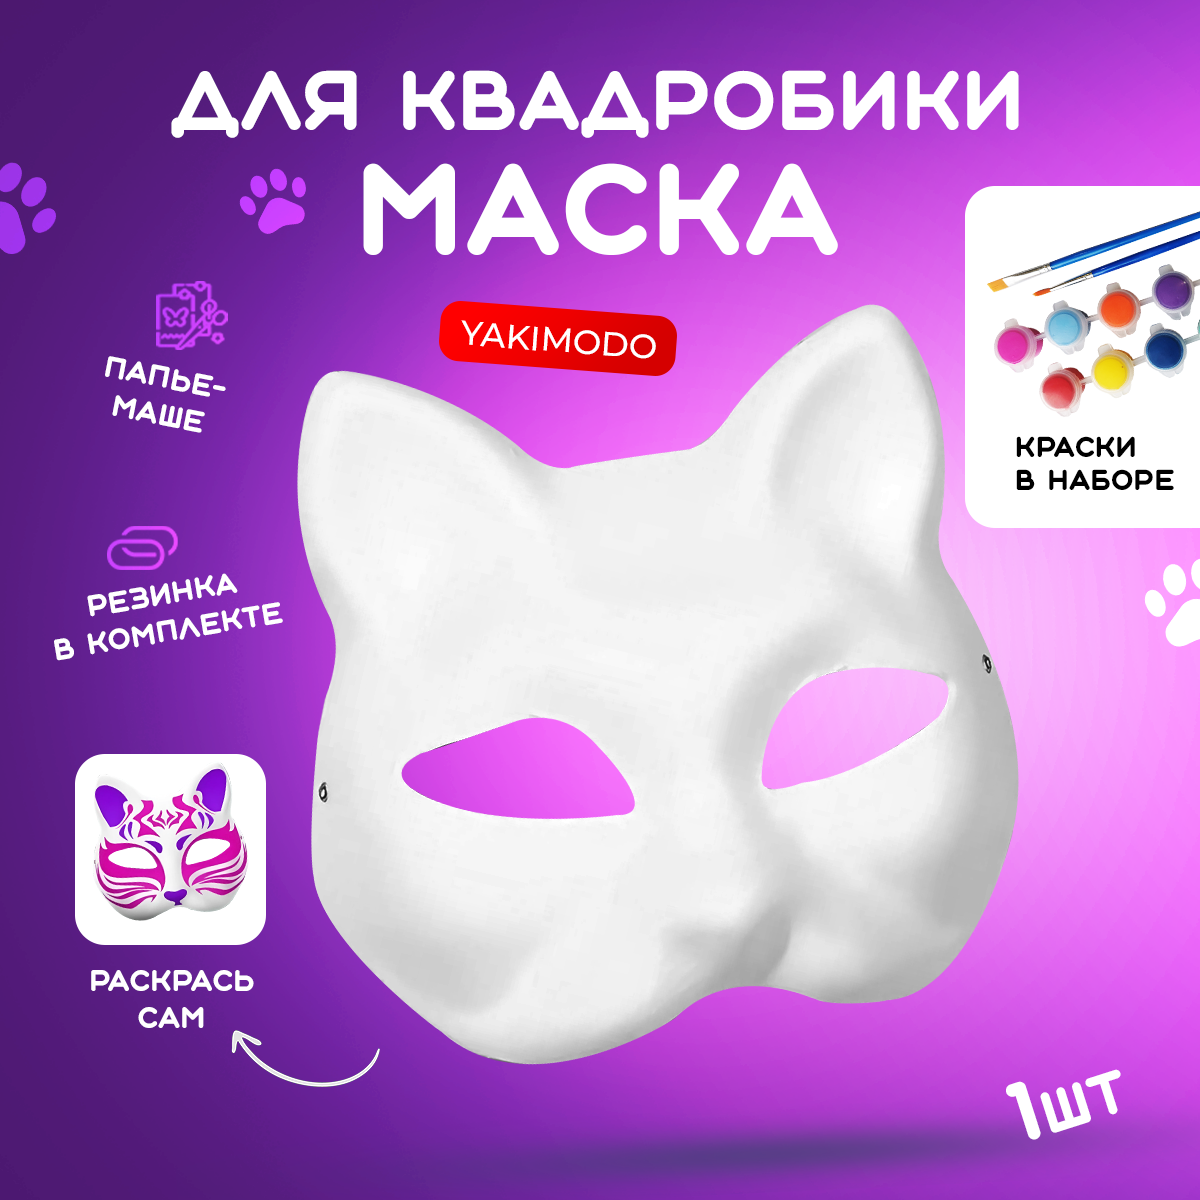 Маска для квадробики кошка из папье маше на резинке с красками, предназначенная для раскрашивания и декорирования